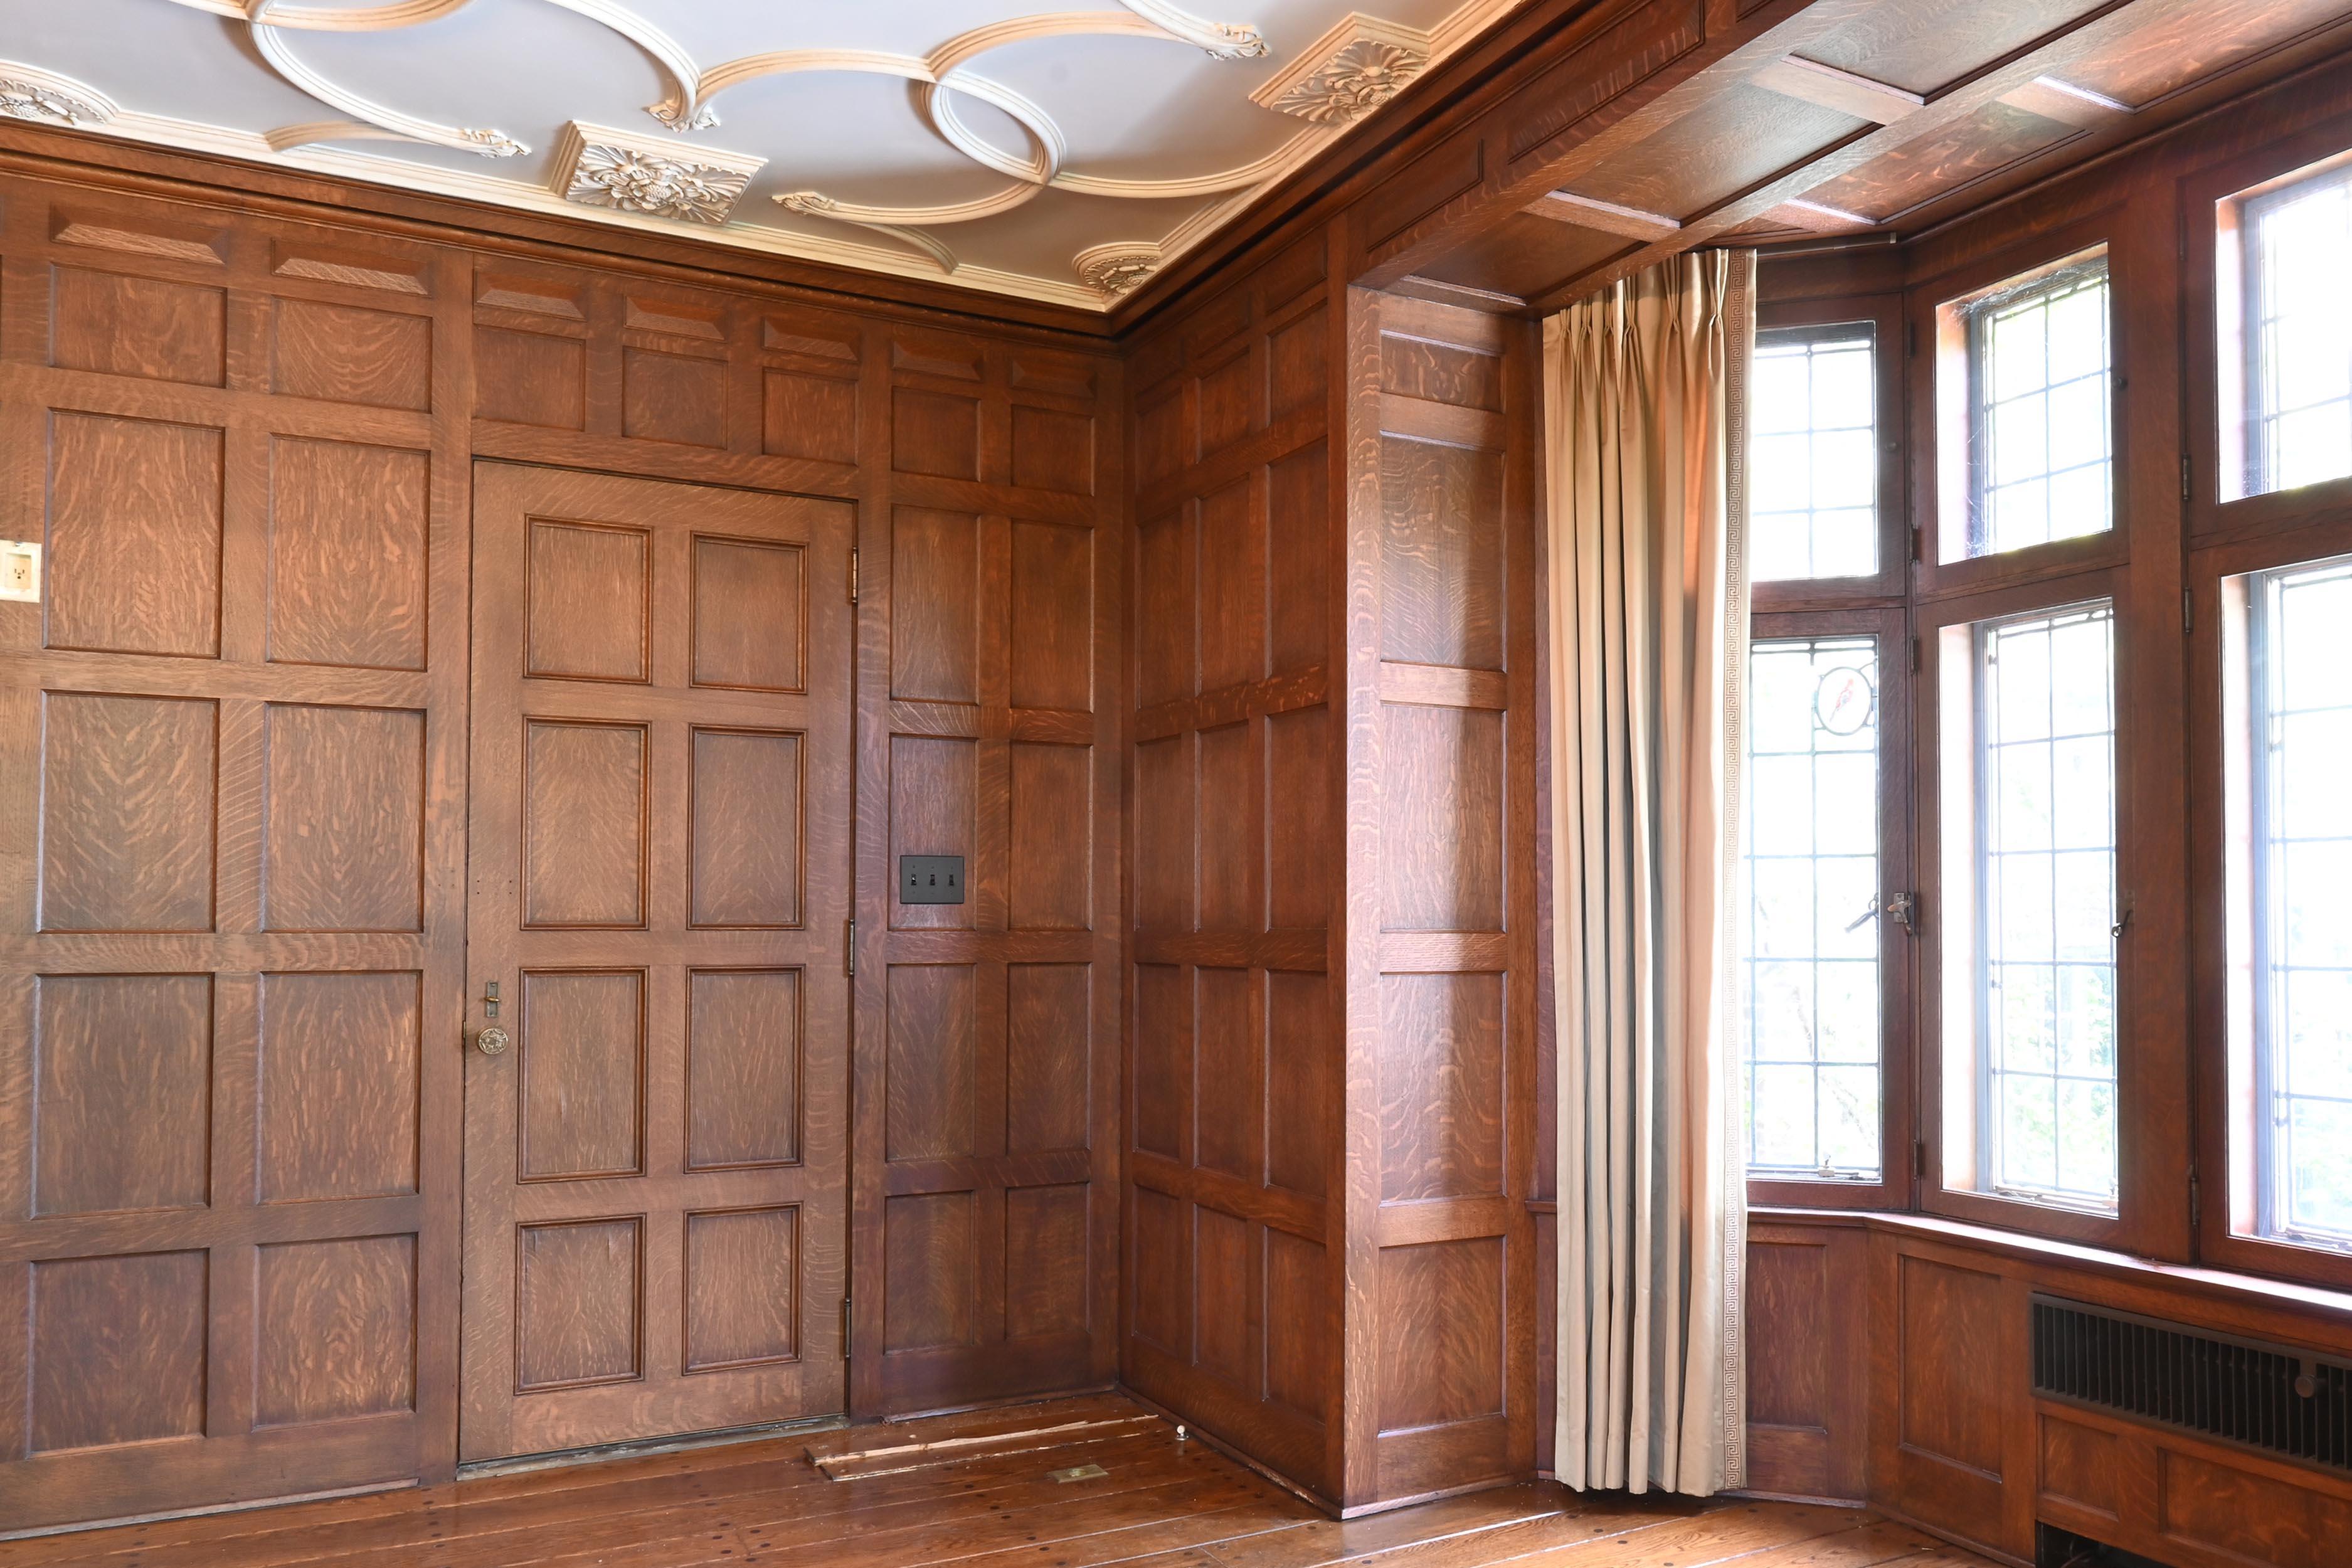 Cast Tiger Oak 'Quarter Sawn' 1929 Paneled Room & Doors Complete For Sale